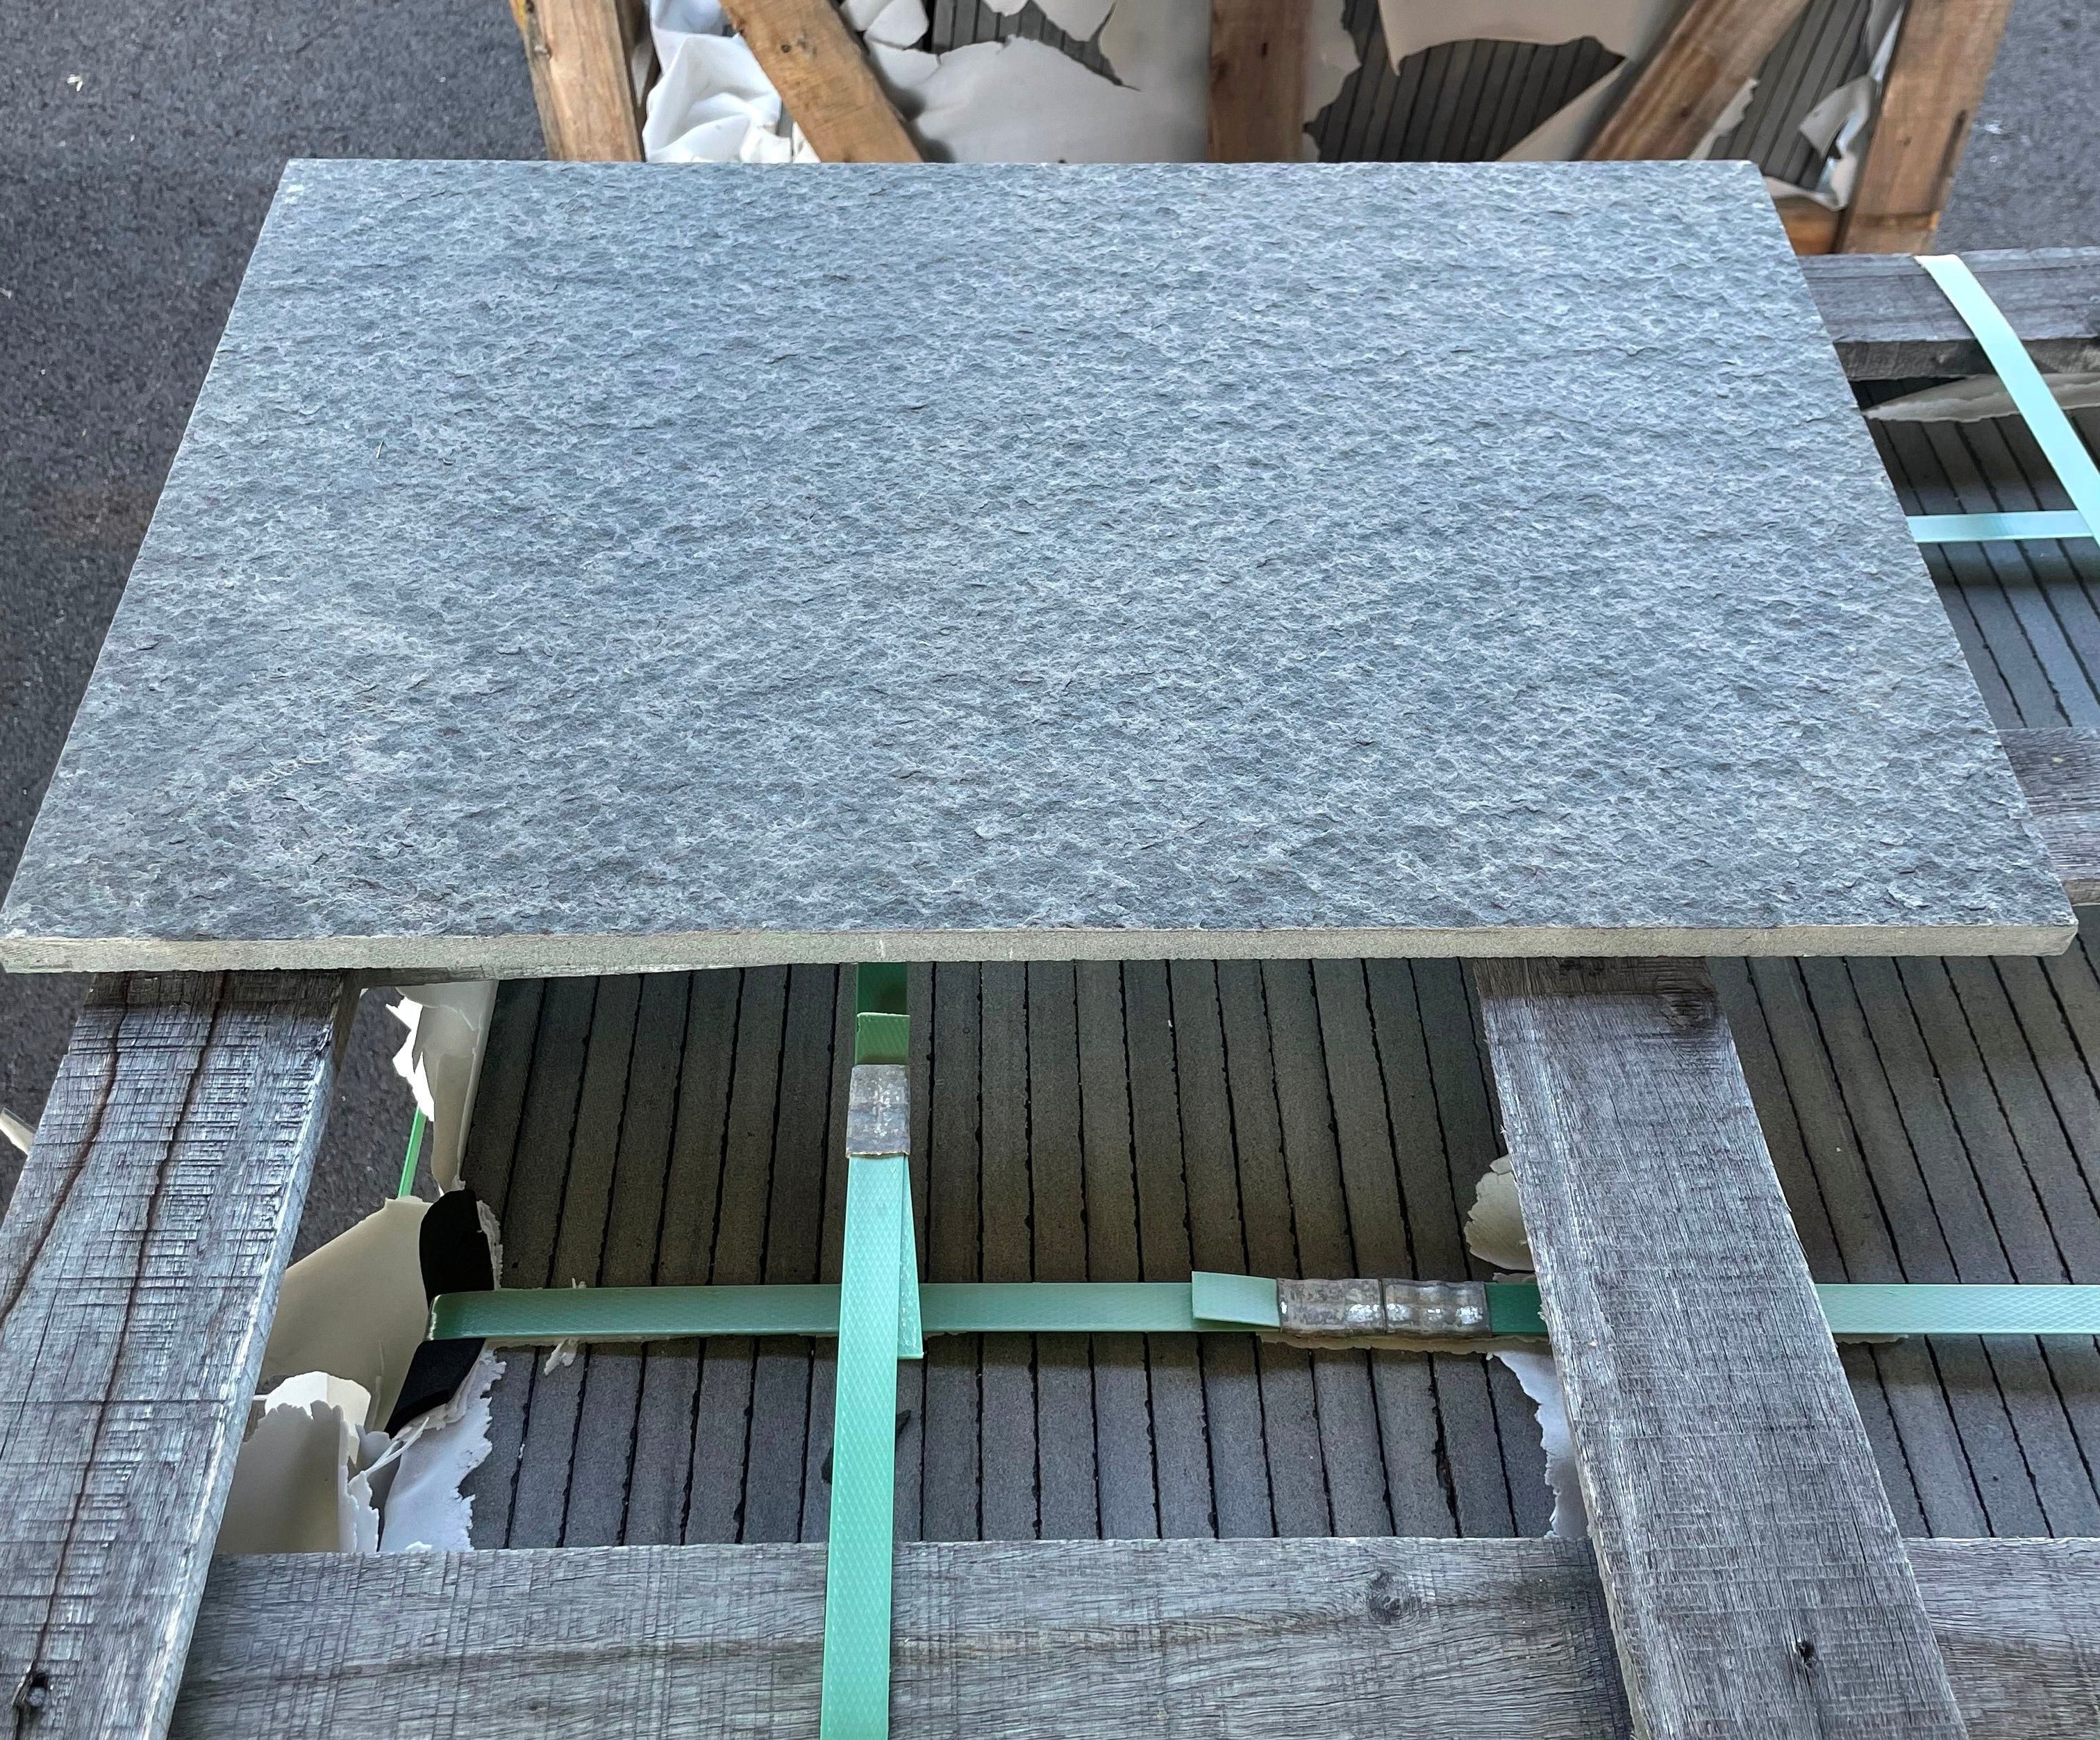 Basalt-Tile-SOLID LAVA GREY Basalt flamed/brushed 24" x 12"- Stone Supplier - Rocks in Stock